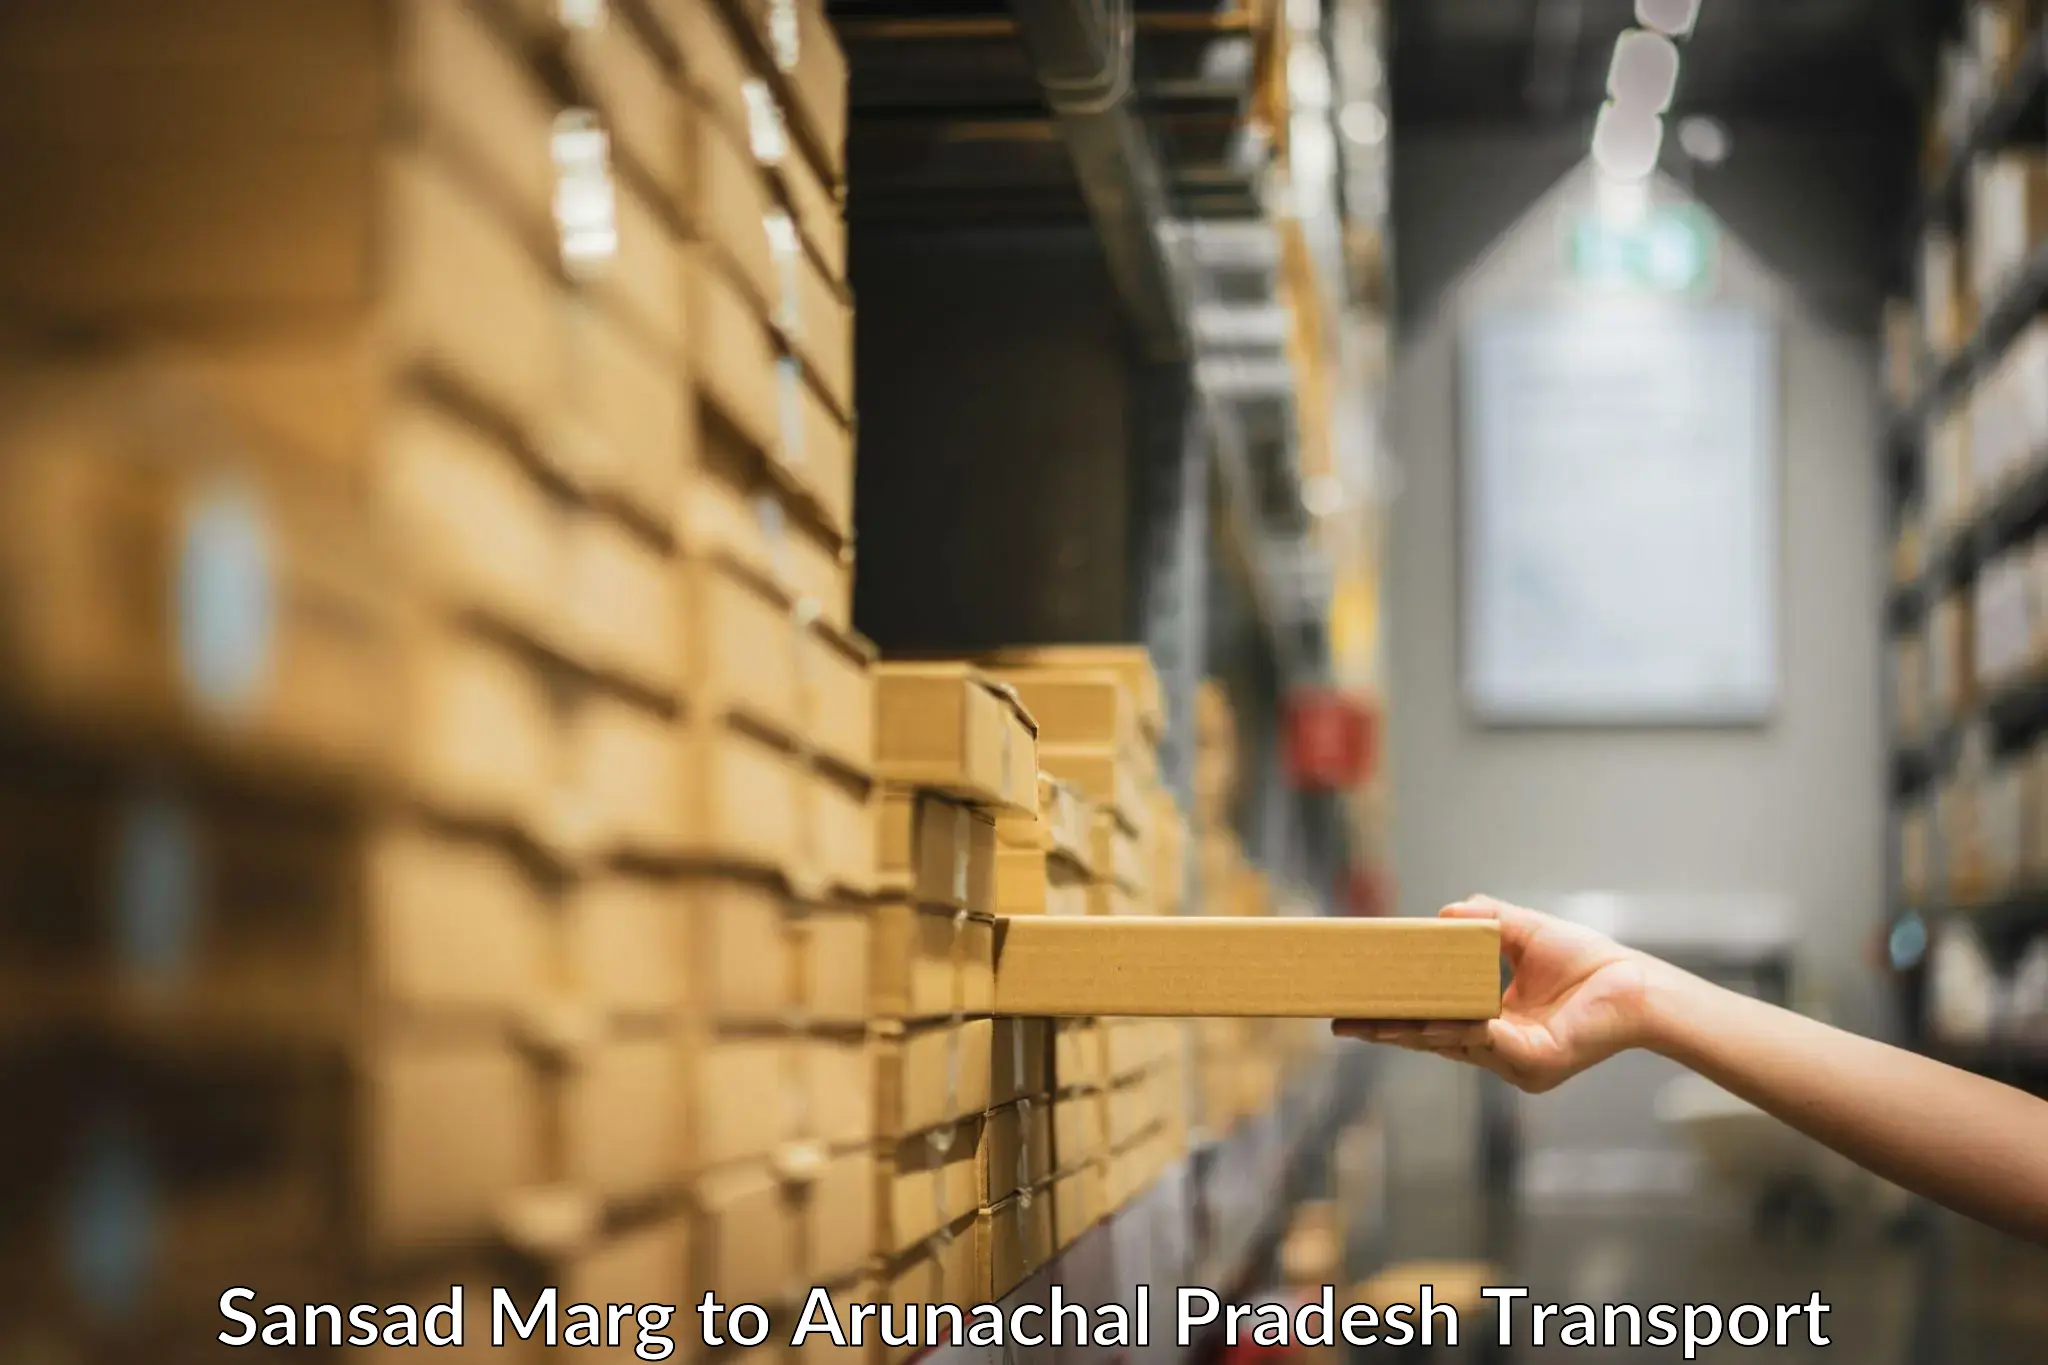 Commercial transport service Sansad Marg to Longding